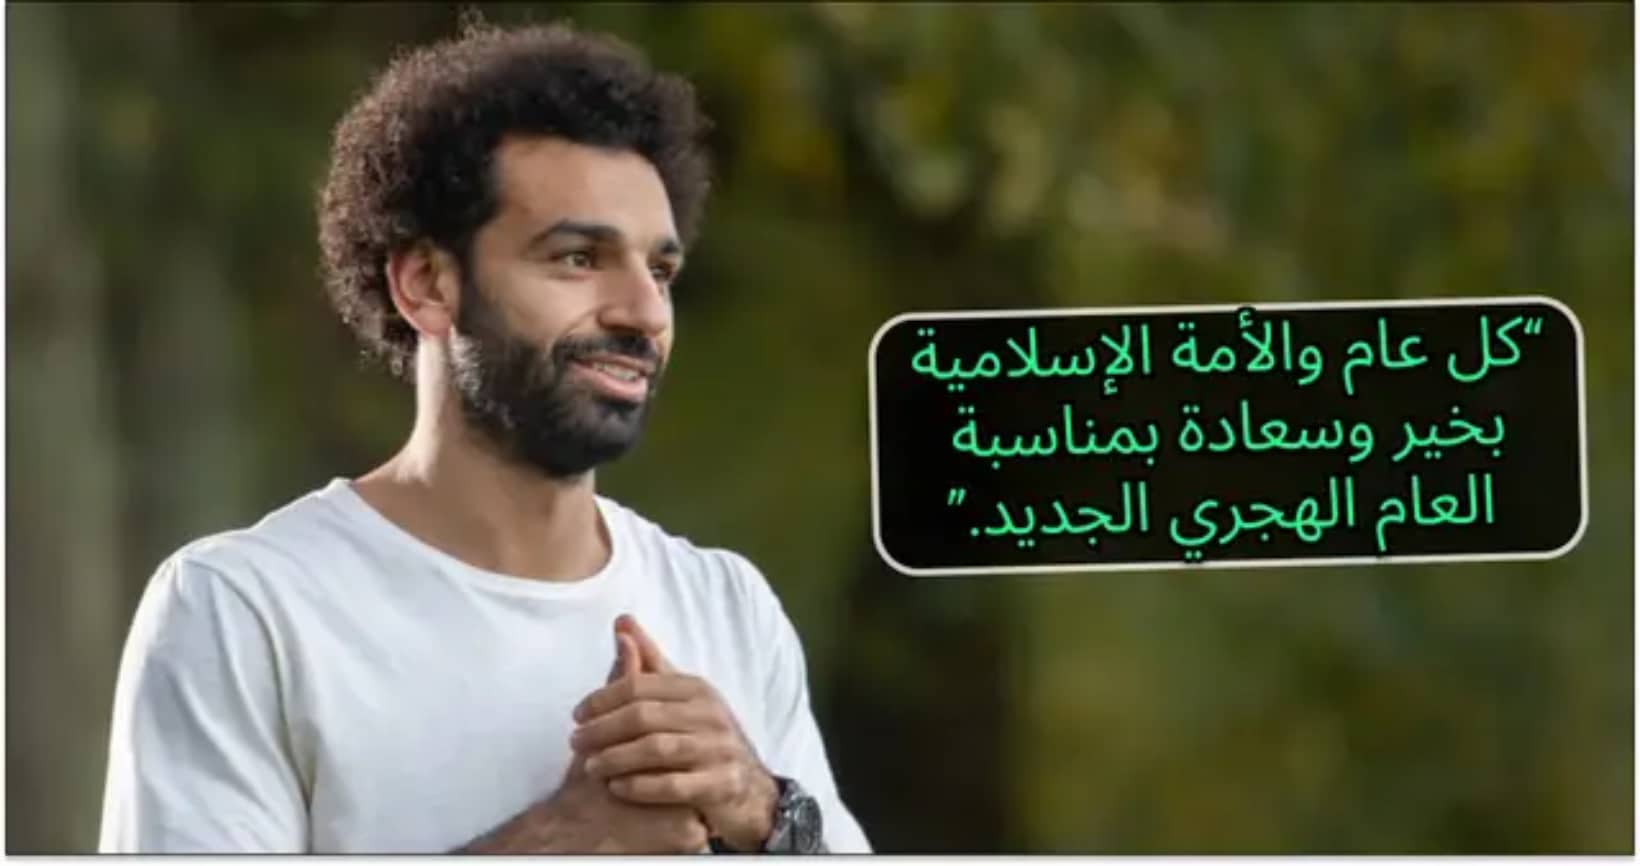 Mo Salah publie un nouveau tweet en arabe, voici de quoi il s’agit